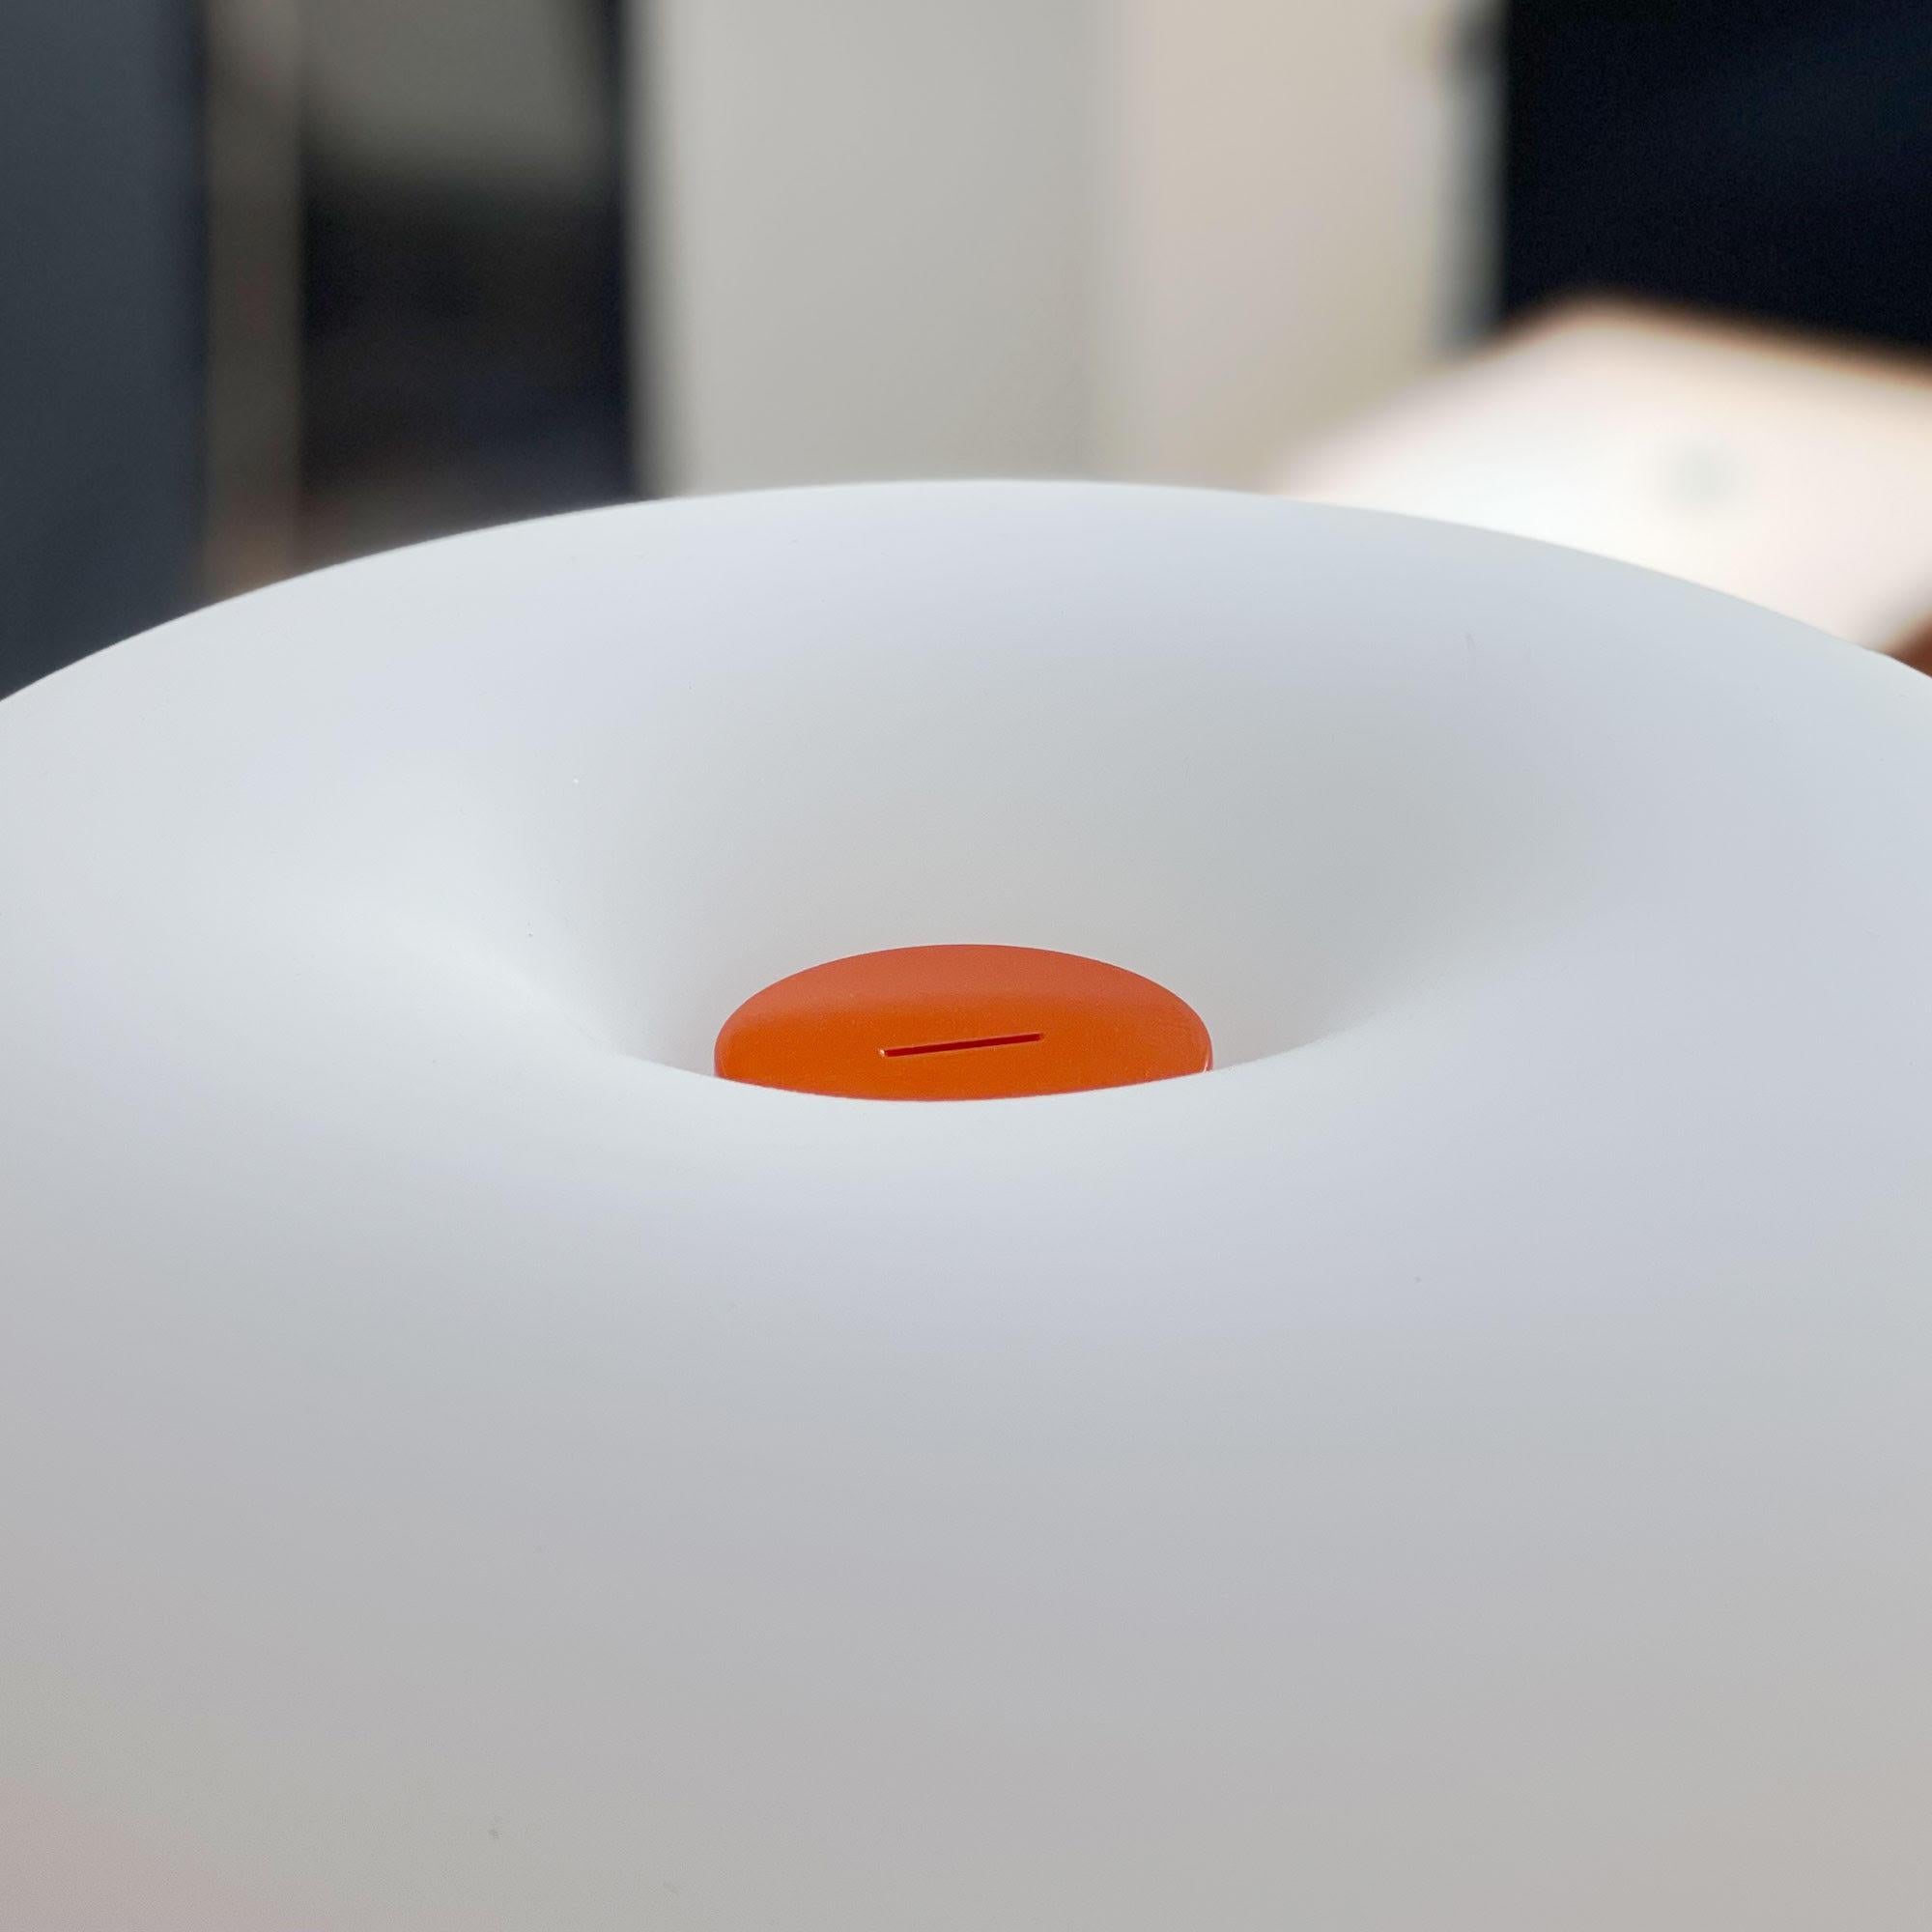 Lampe de table en métal et verre Michel Mortier 10576 pour Disderot en orange.

Conçue à l'origine en 1972, cette lampe de table sculpturale est une nouvelle édition numérotée produite avec un certificat d'authentification. Fabriqué en France par